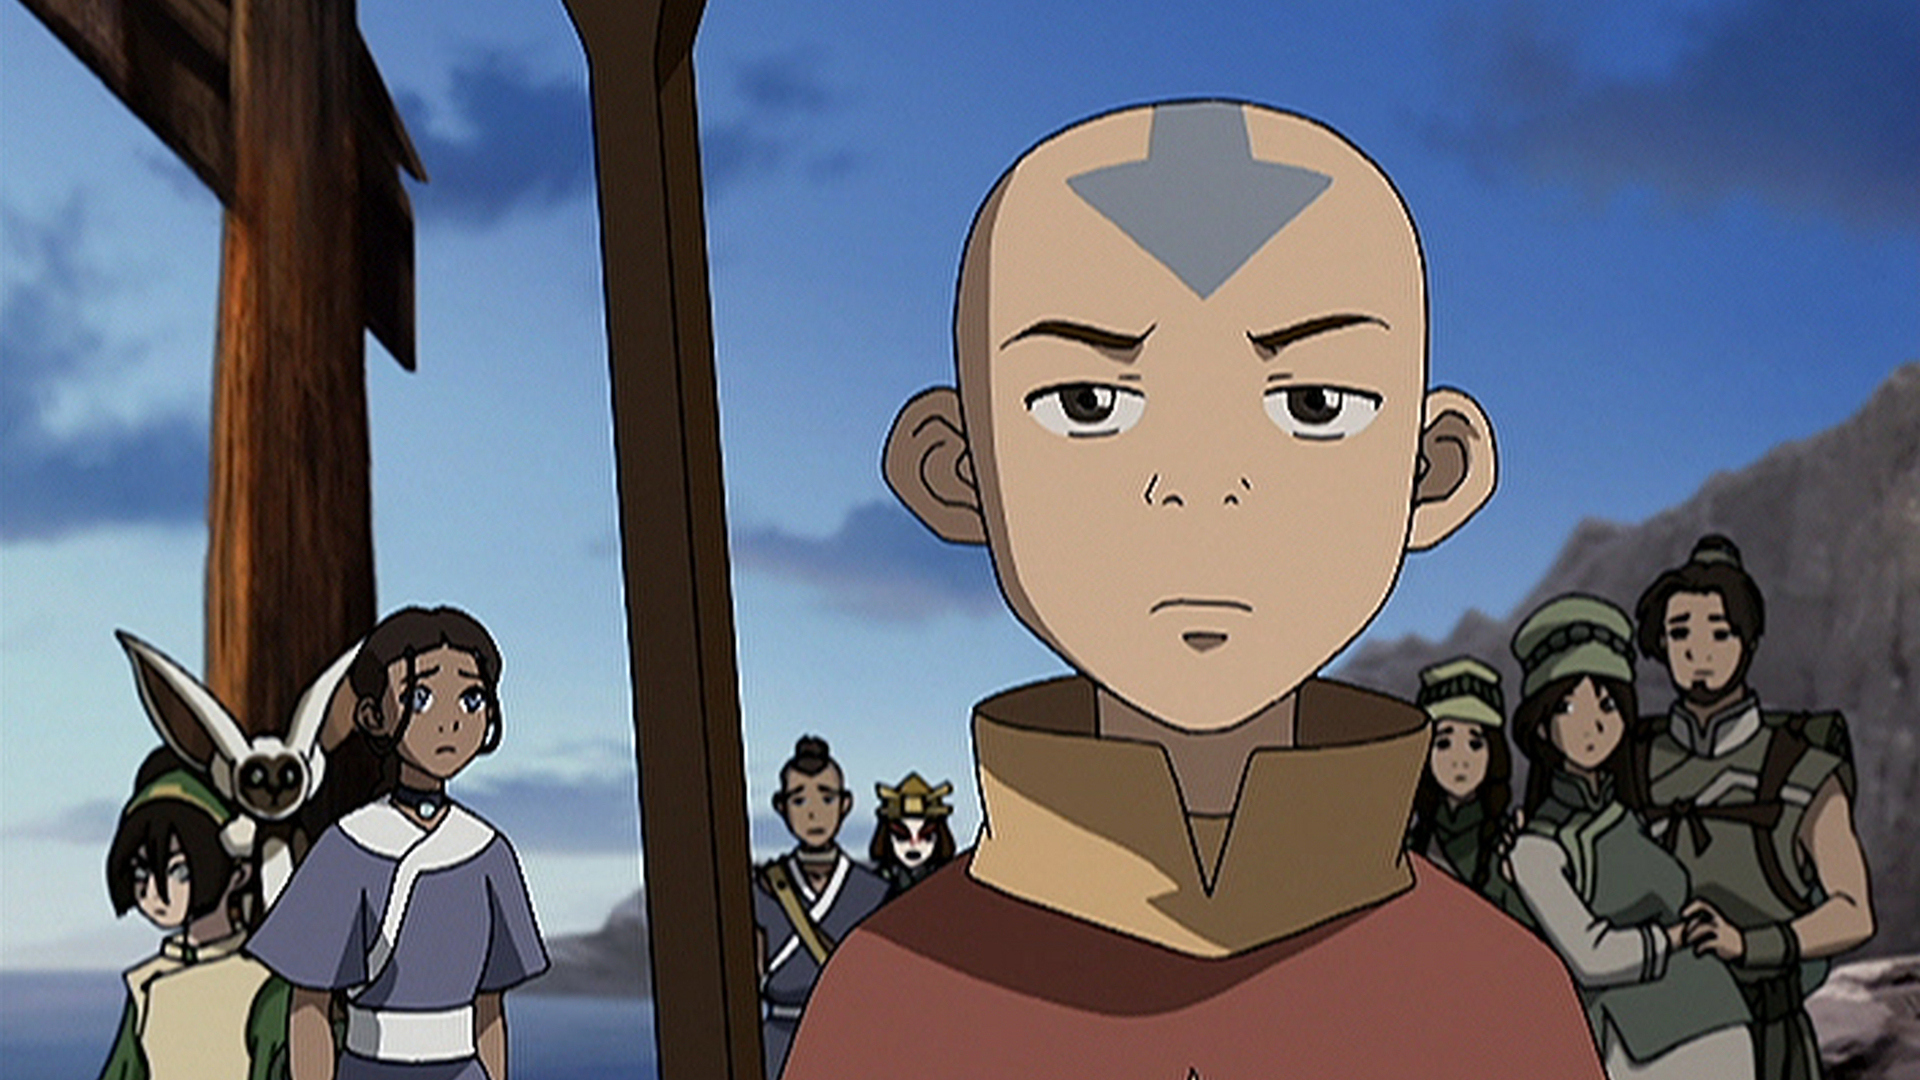 Ver Avatar La Leyenda De Aang Temporada 2 Episodio 12 Avatar La Leyenda De Aang El Secreto 4956